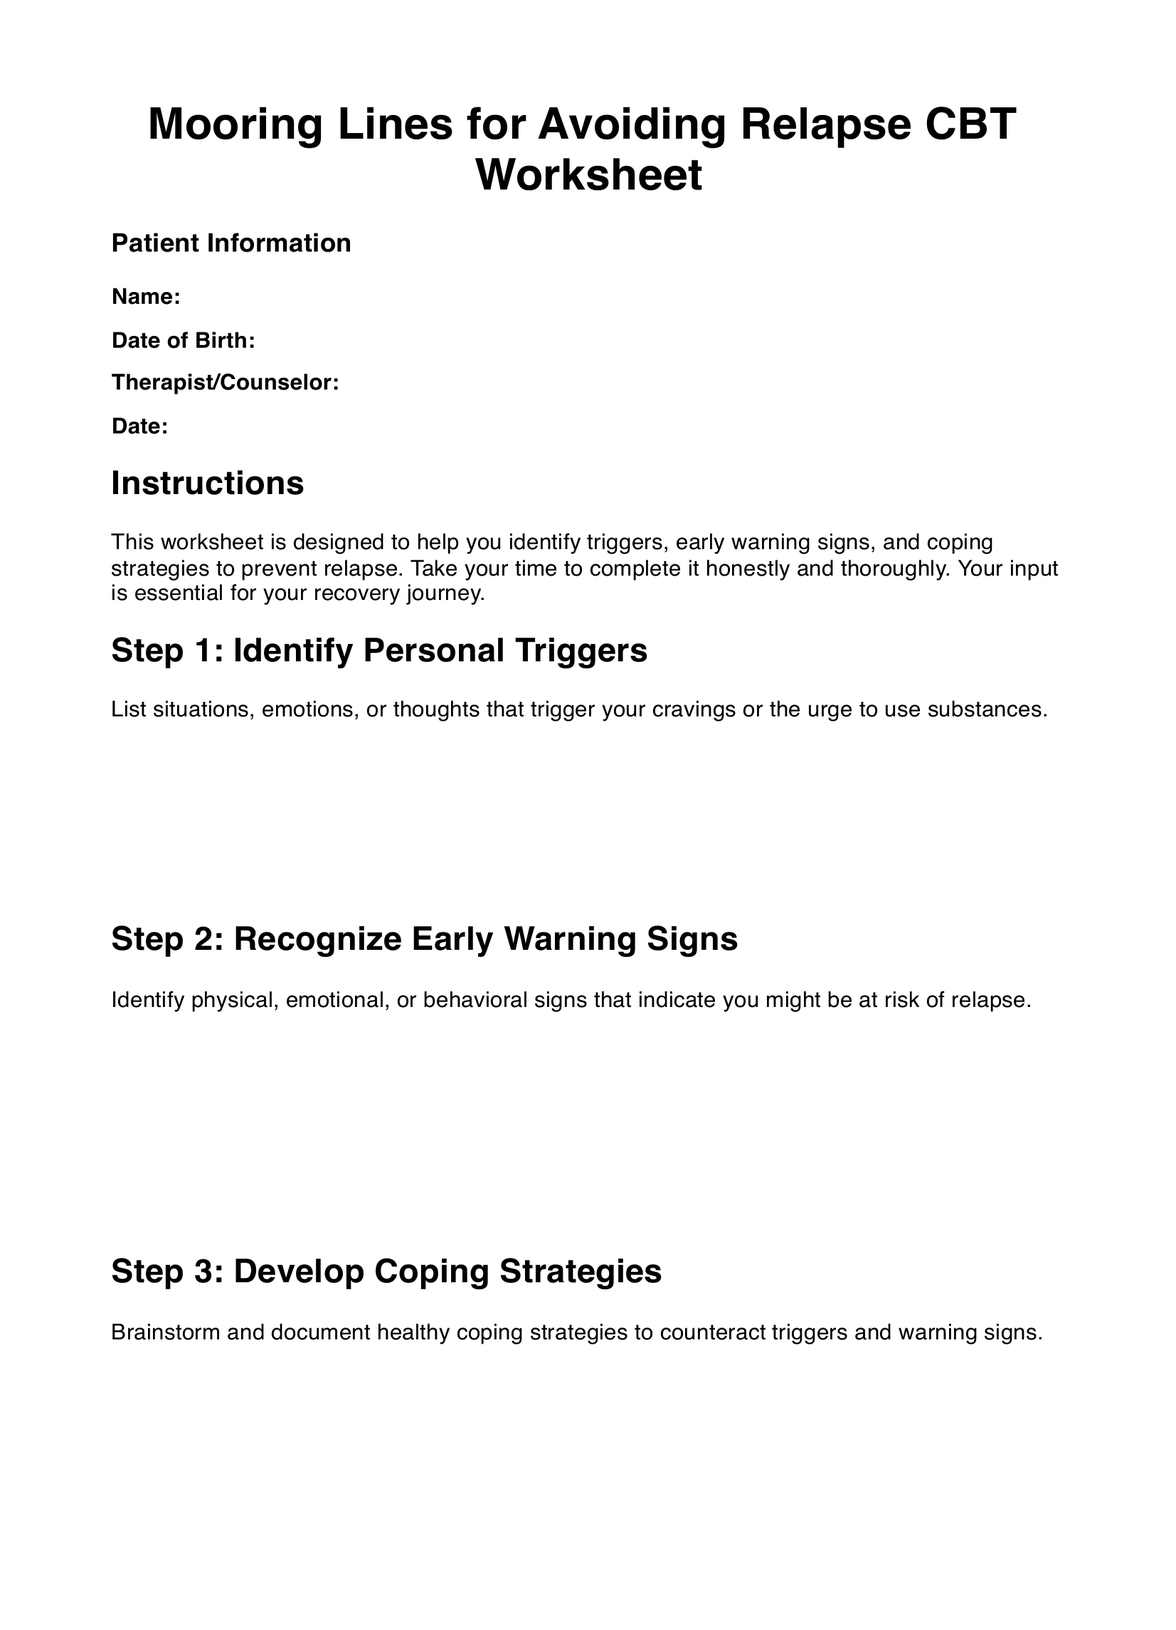 Mooring Lines for Avoiding Relapse CBT Worksheets PDF Example